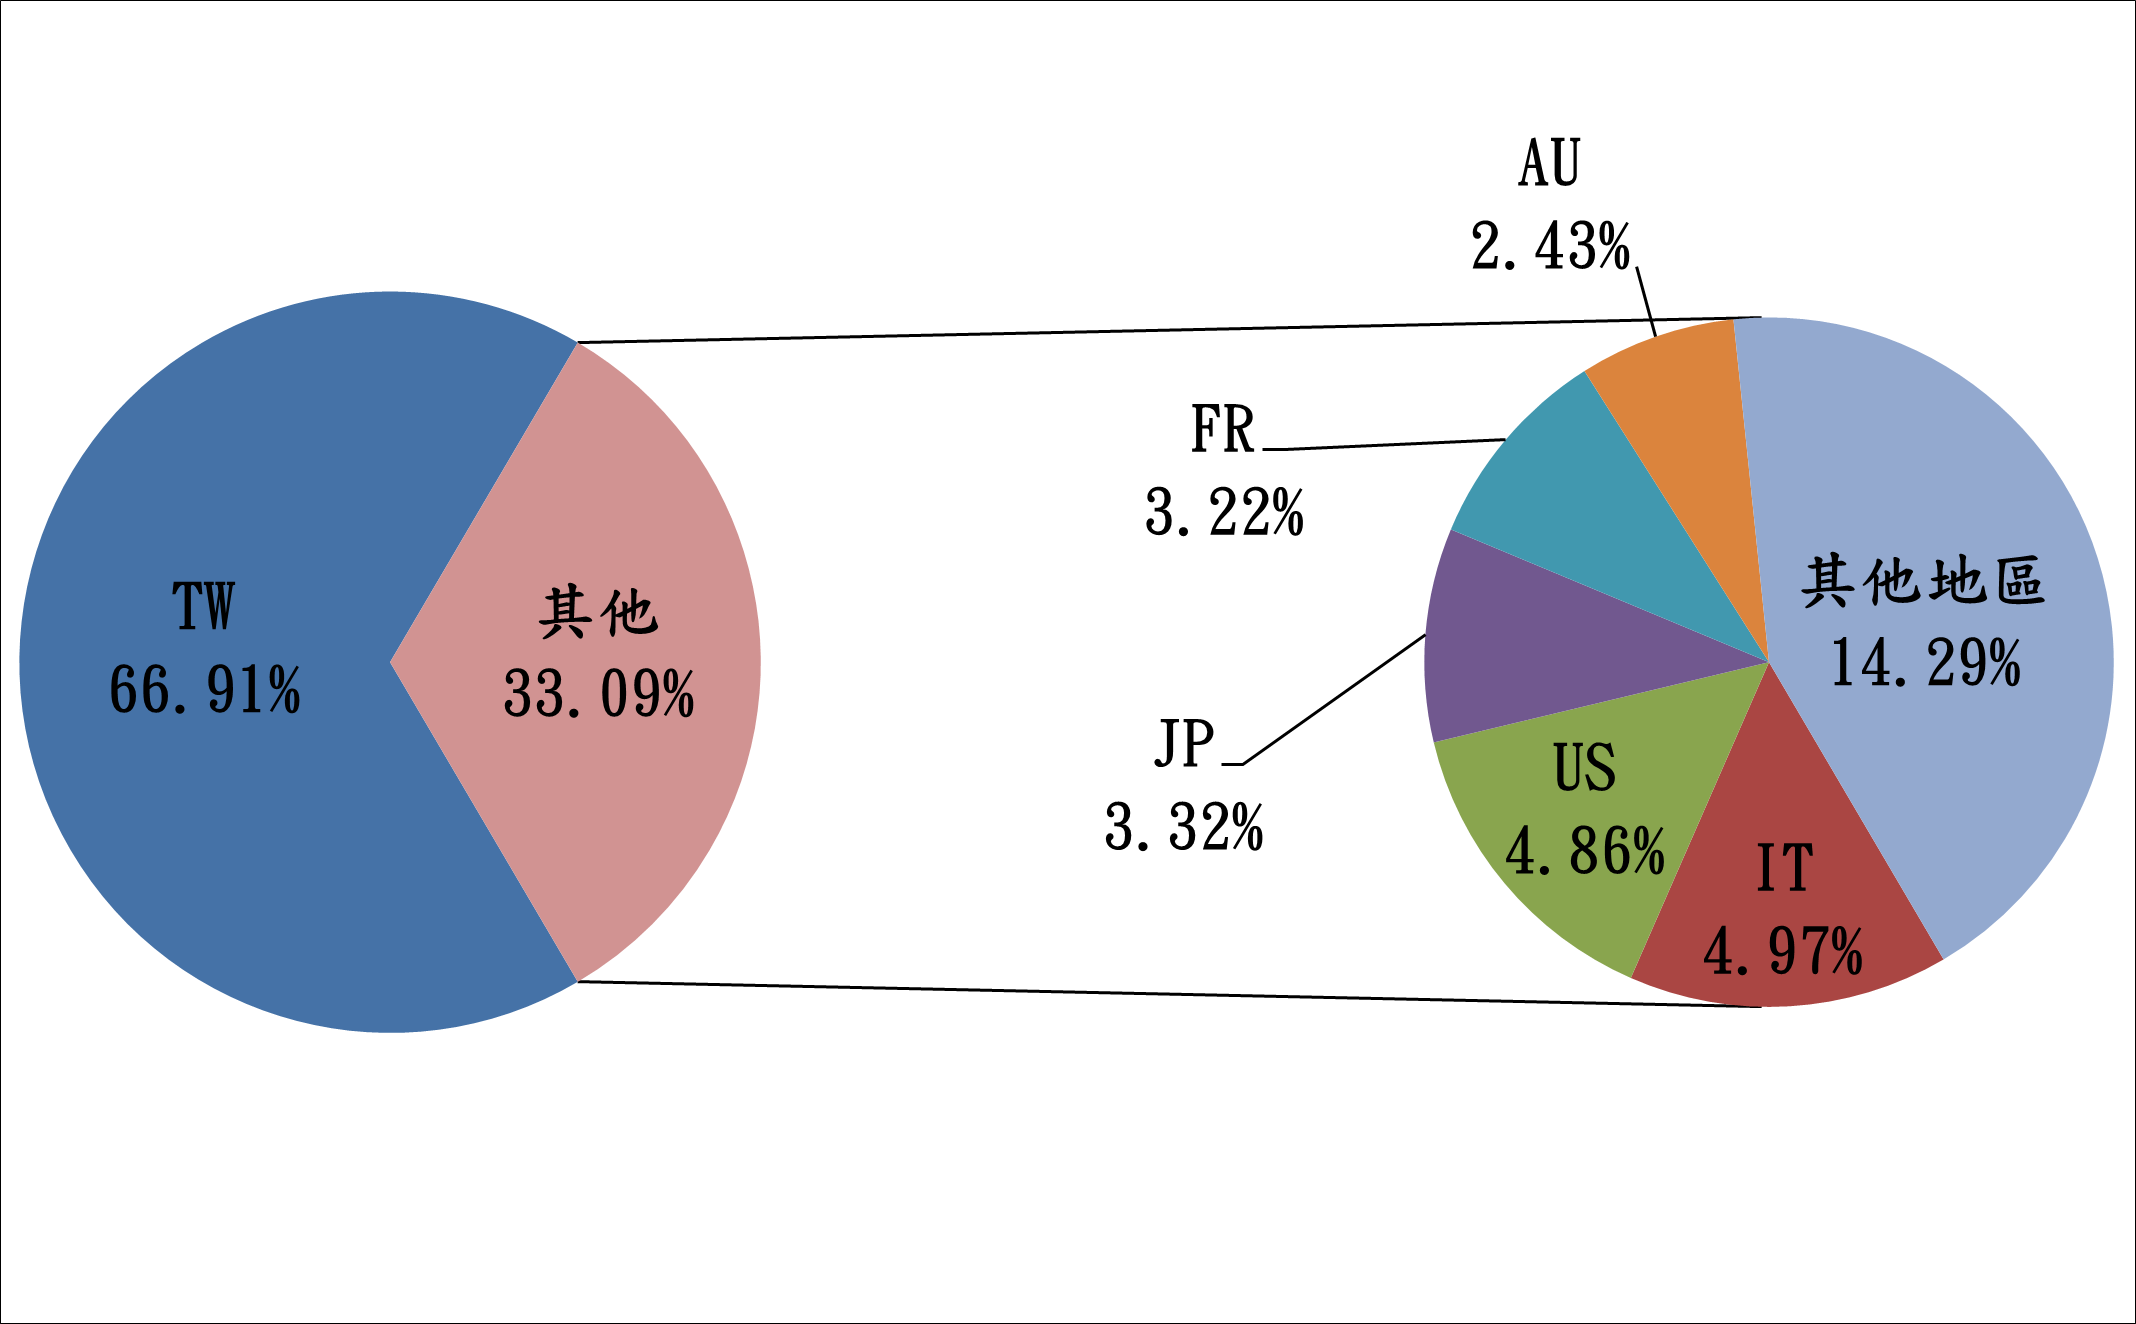 TW66.91% 其他33.09% AU2.43% FR3.22% JP3.32% US4.86% IT4.97% 其他地區14.29%